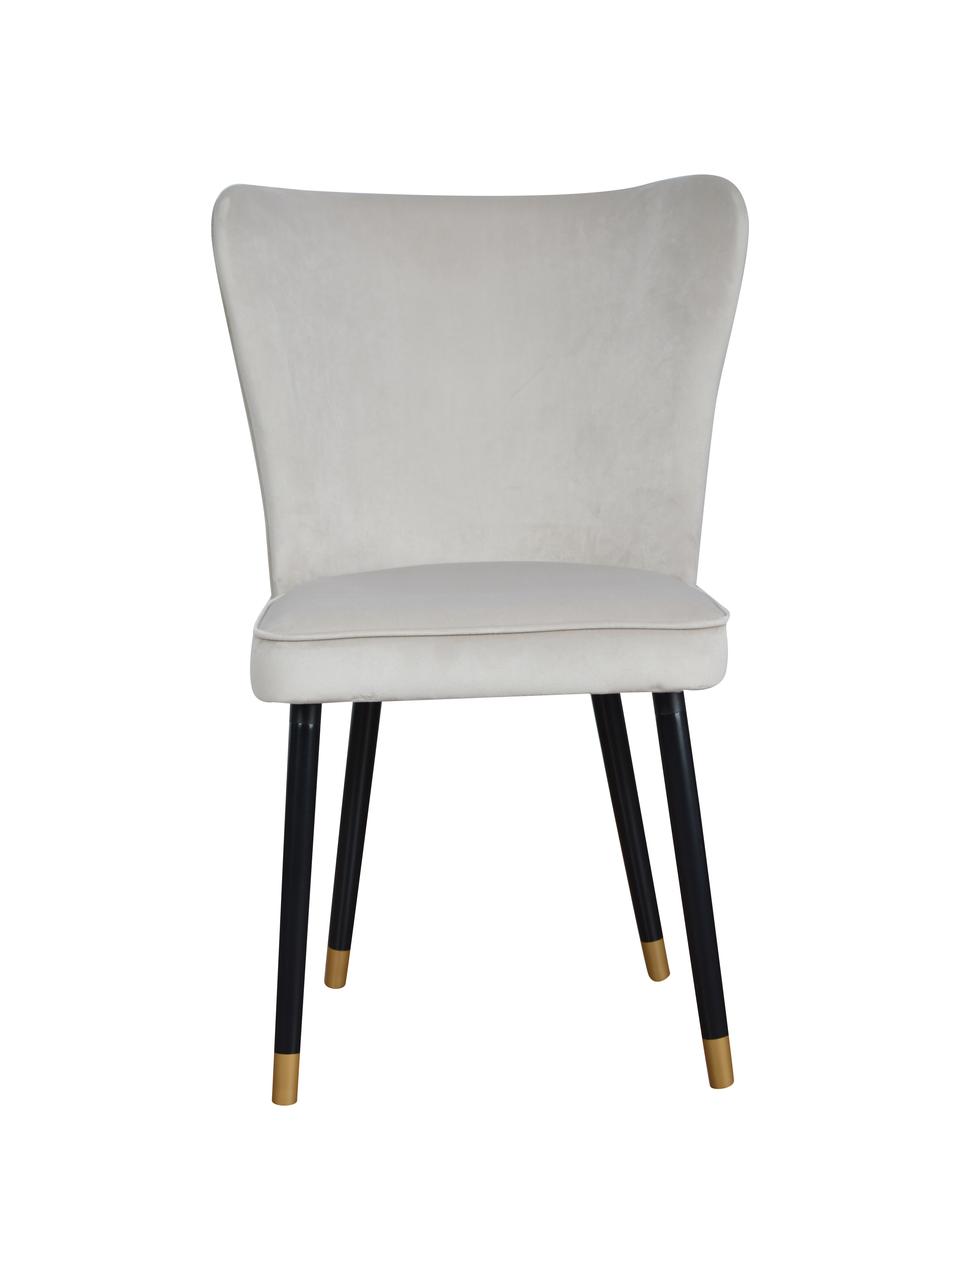 Krzesło tapicerowane z aksamitu Monti, Tapicerka: aksamit (100% poliester), Nogi: drewno naturalne, fornir, Jasnoszary aksamit, S 55 x G 66 cm